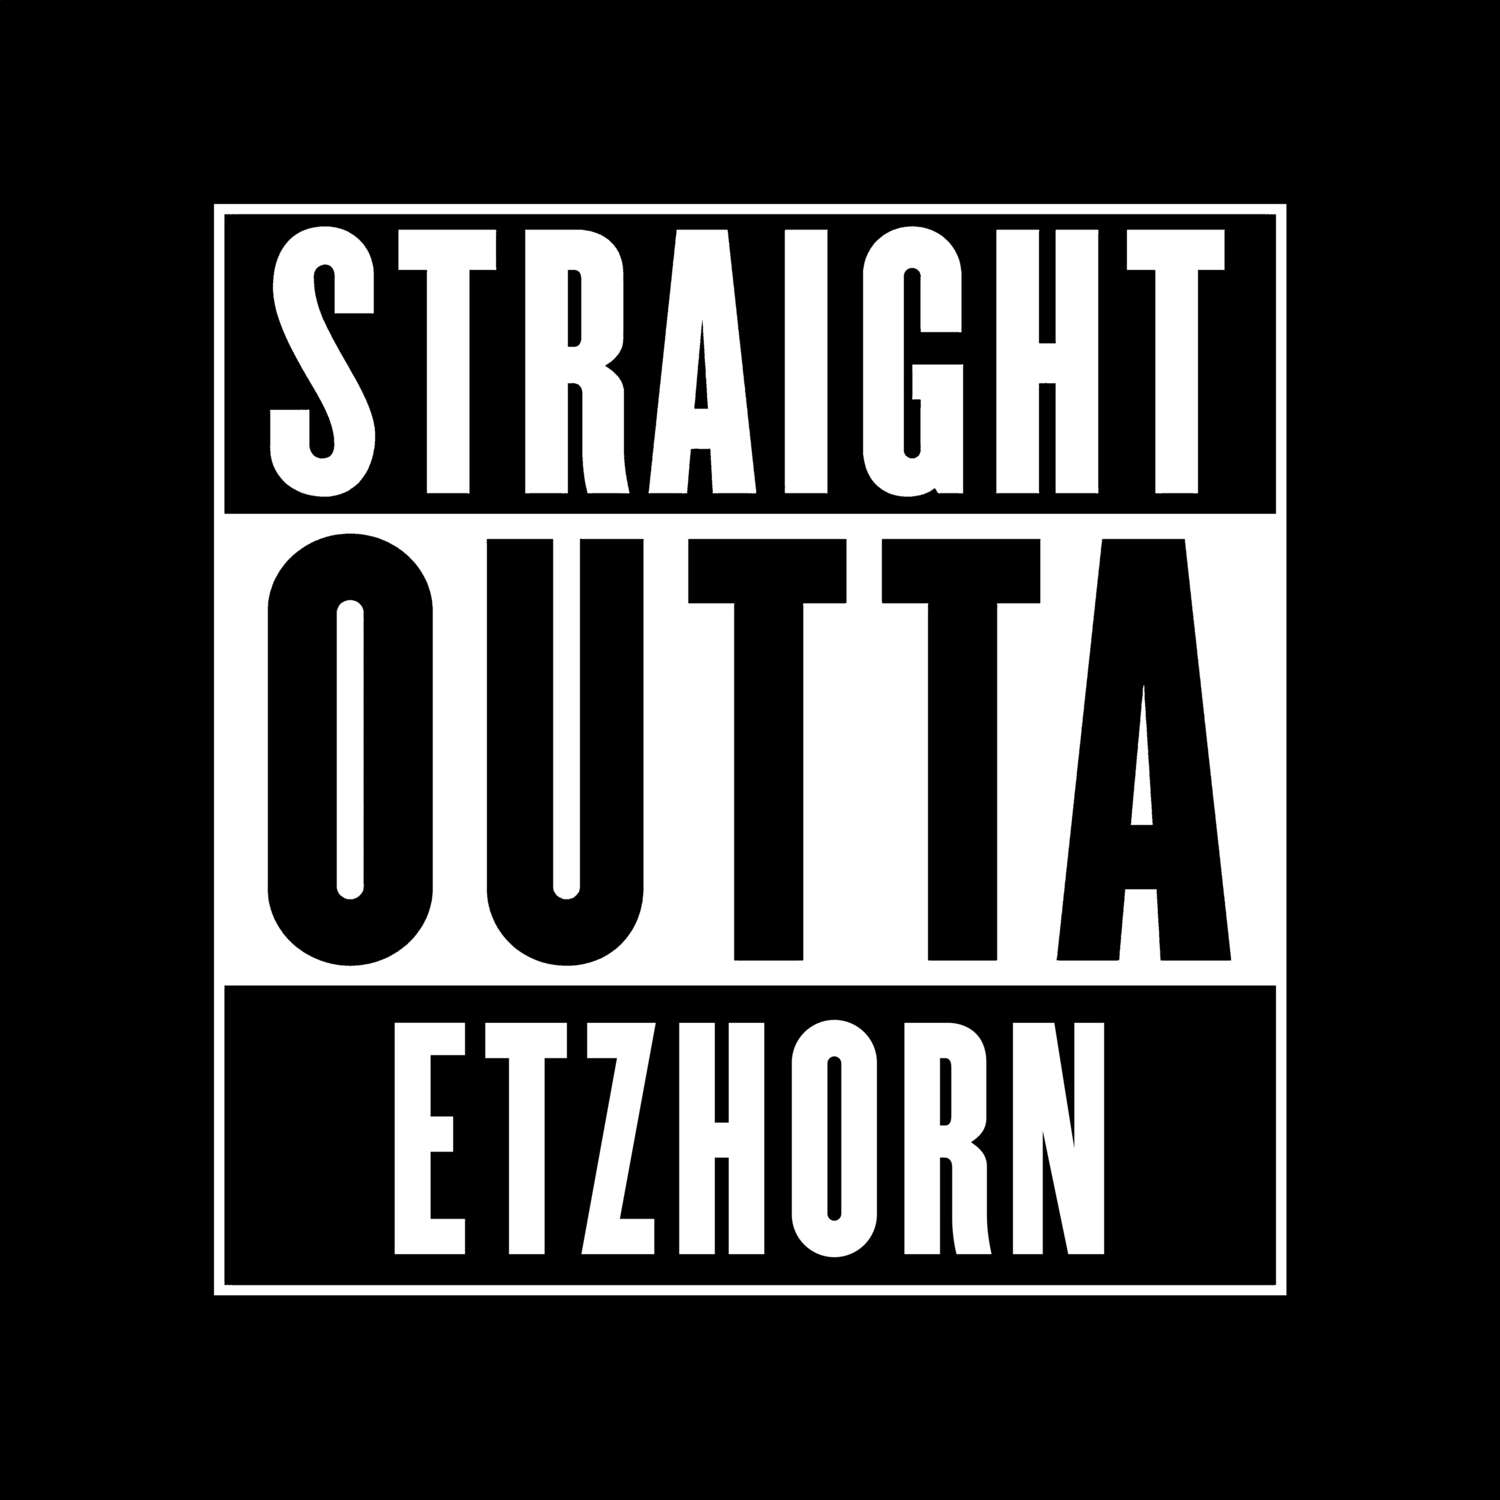 Etzhorn T-Shirt »Straight Outta«